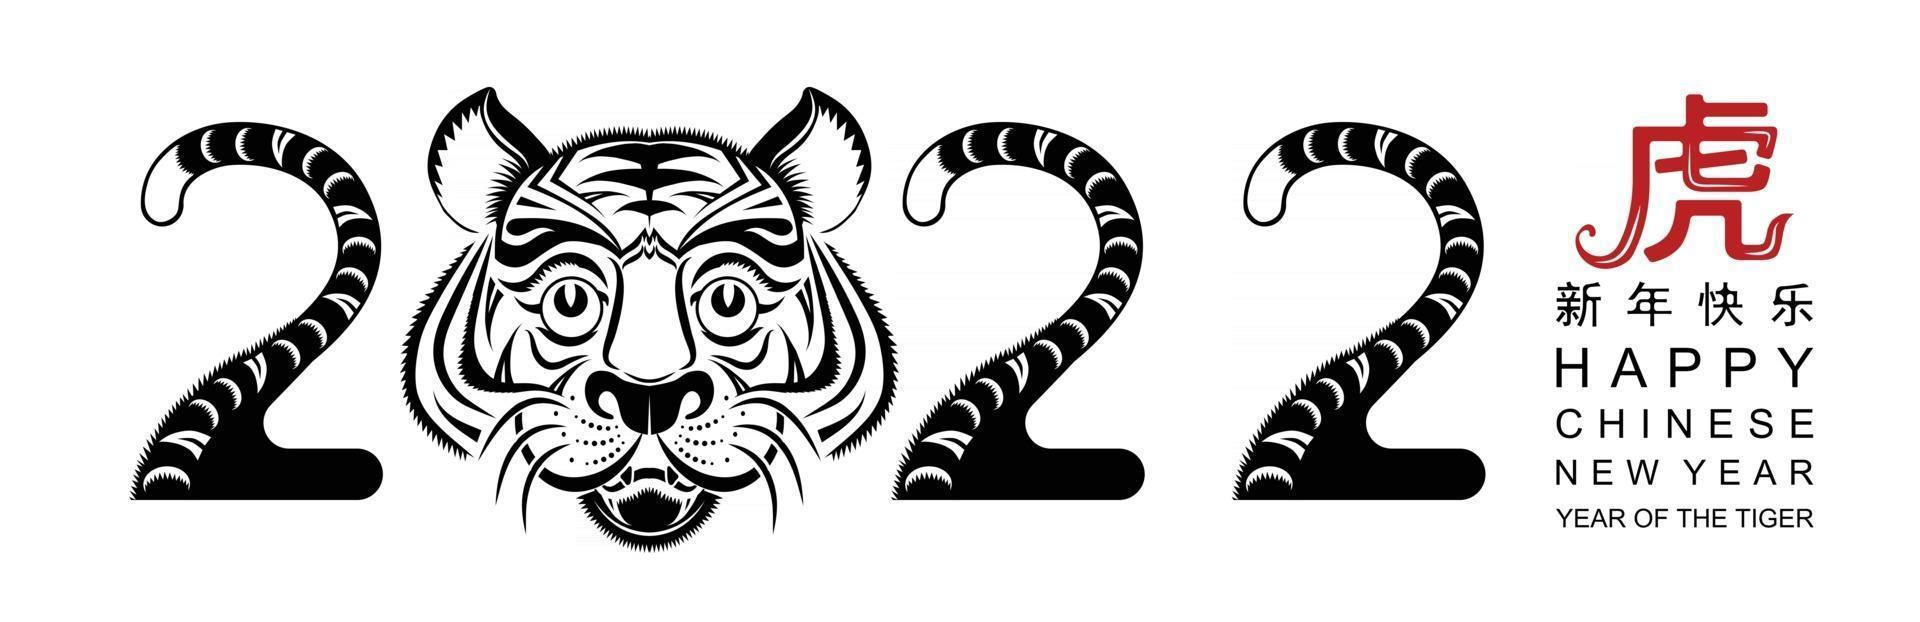 capodanno cinese 2022 anno della tigre vettore